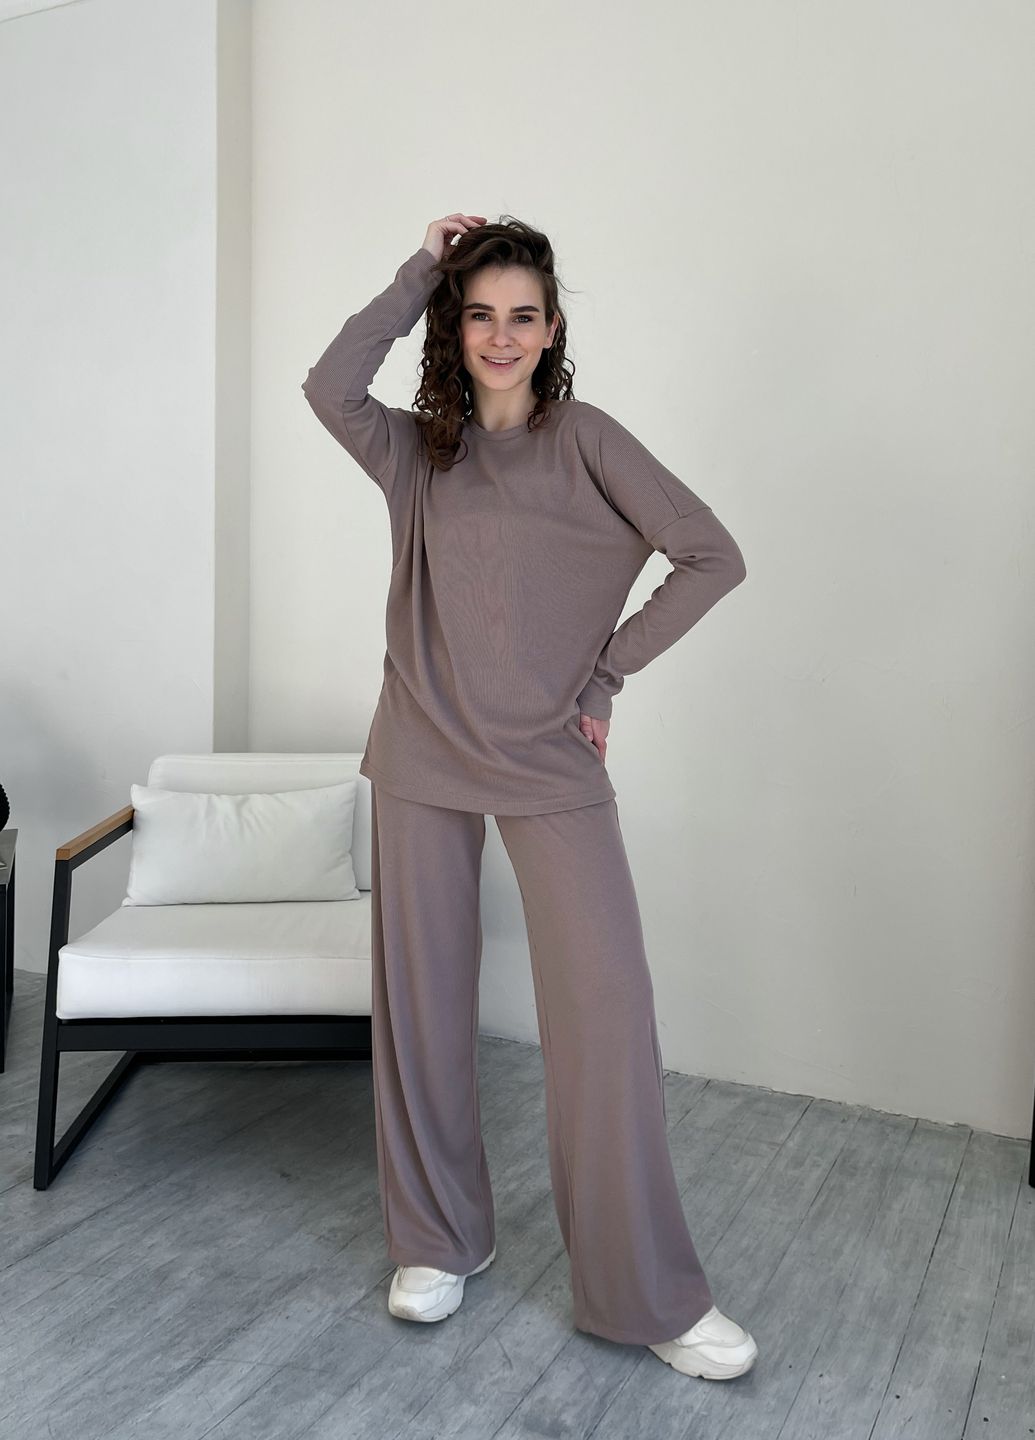 Купить Костюм женский в рубчик цвета мокко с широкими штанами Merlini Мантуя 100000404, размер XS-M в интернет-магазине